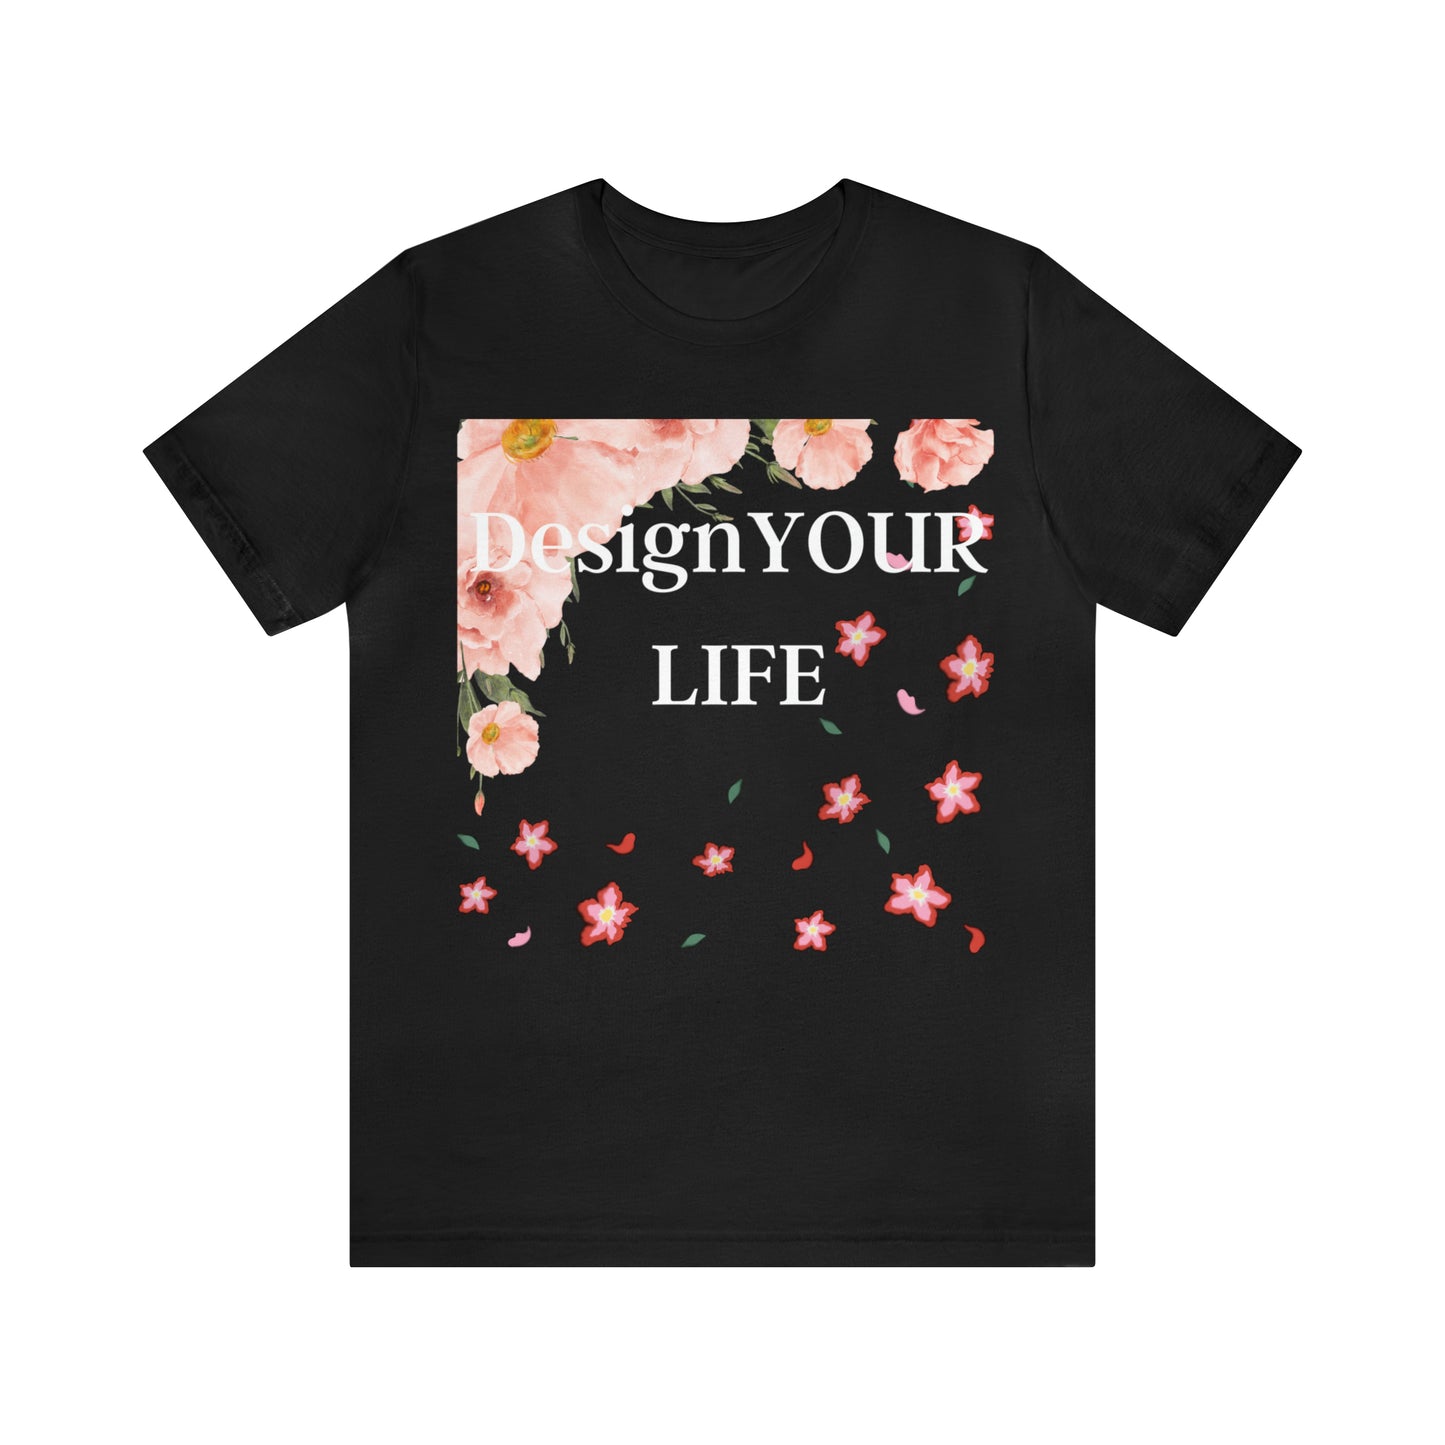 Jersey Short,T-shirt for women, Modern women, Design to life,Fun T-shirt,Perfect for summer